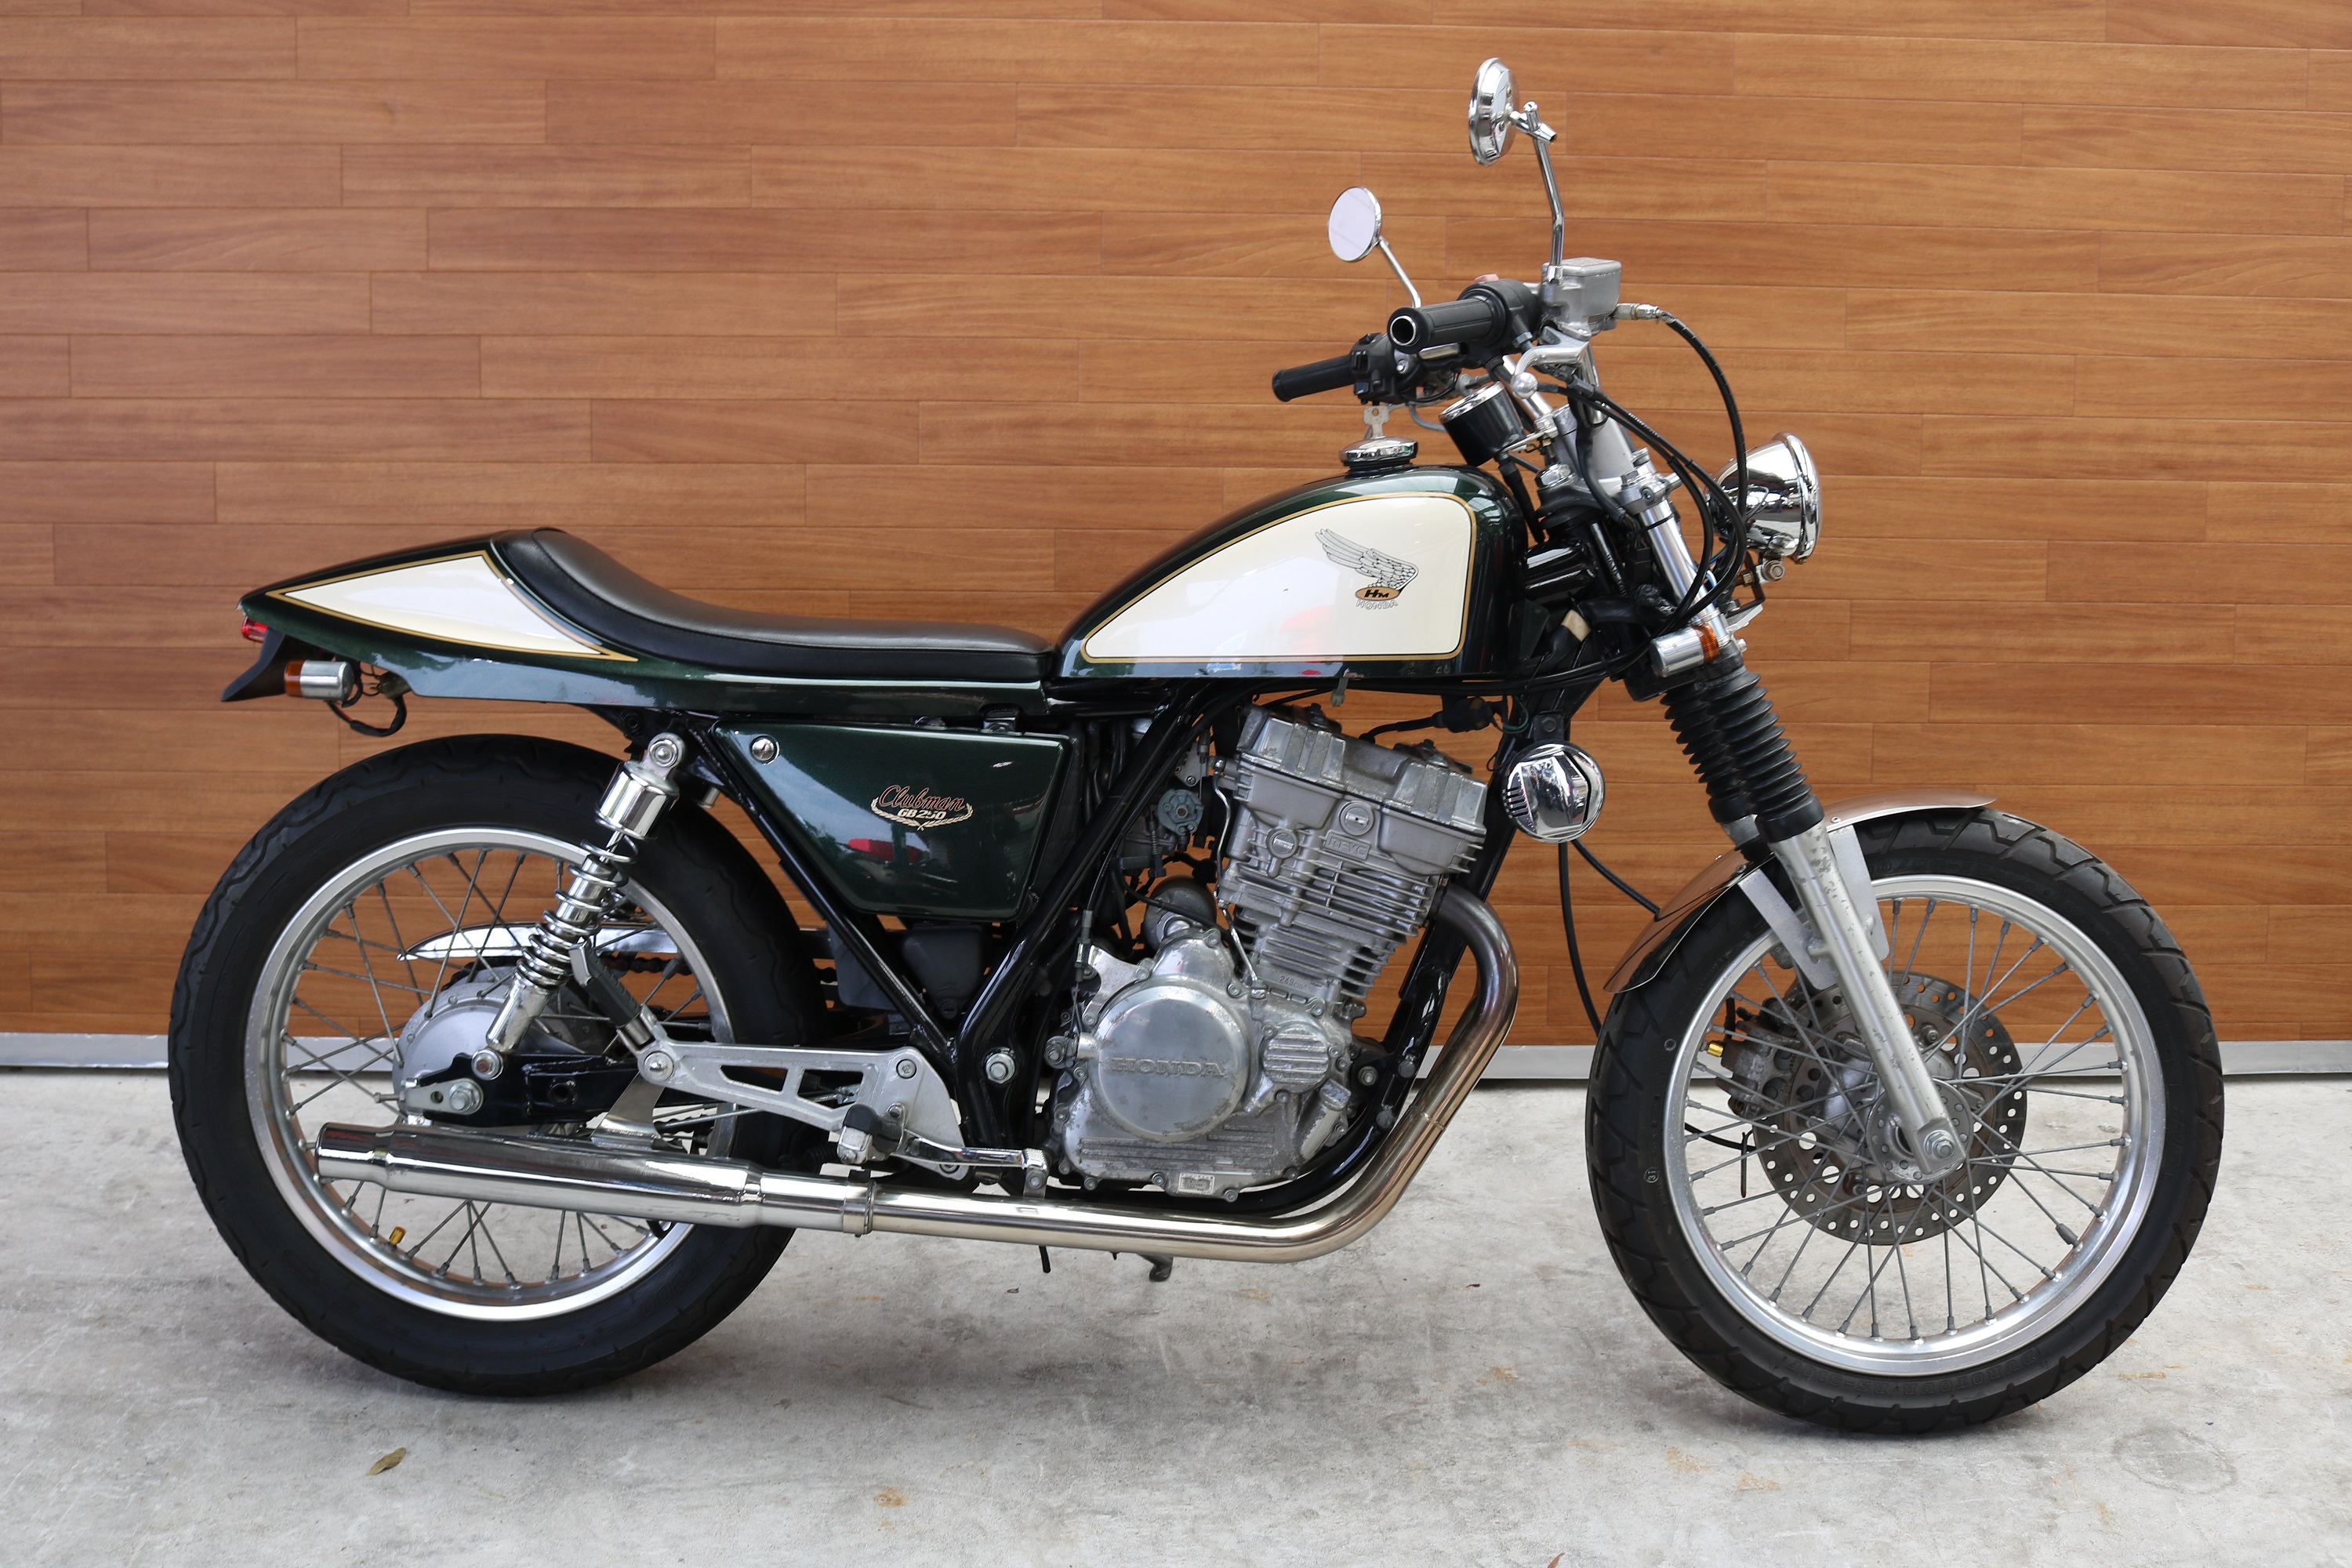 熊本中古車バイク情報 ホンダ Gb250 改 250 緑 熊本のバイクショップ アール バイクの新車 中古車販売や買取 レンタルバイクのことならおまかせください